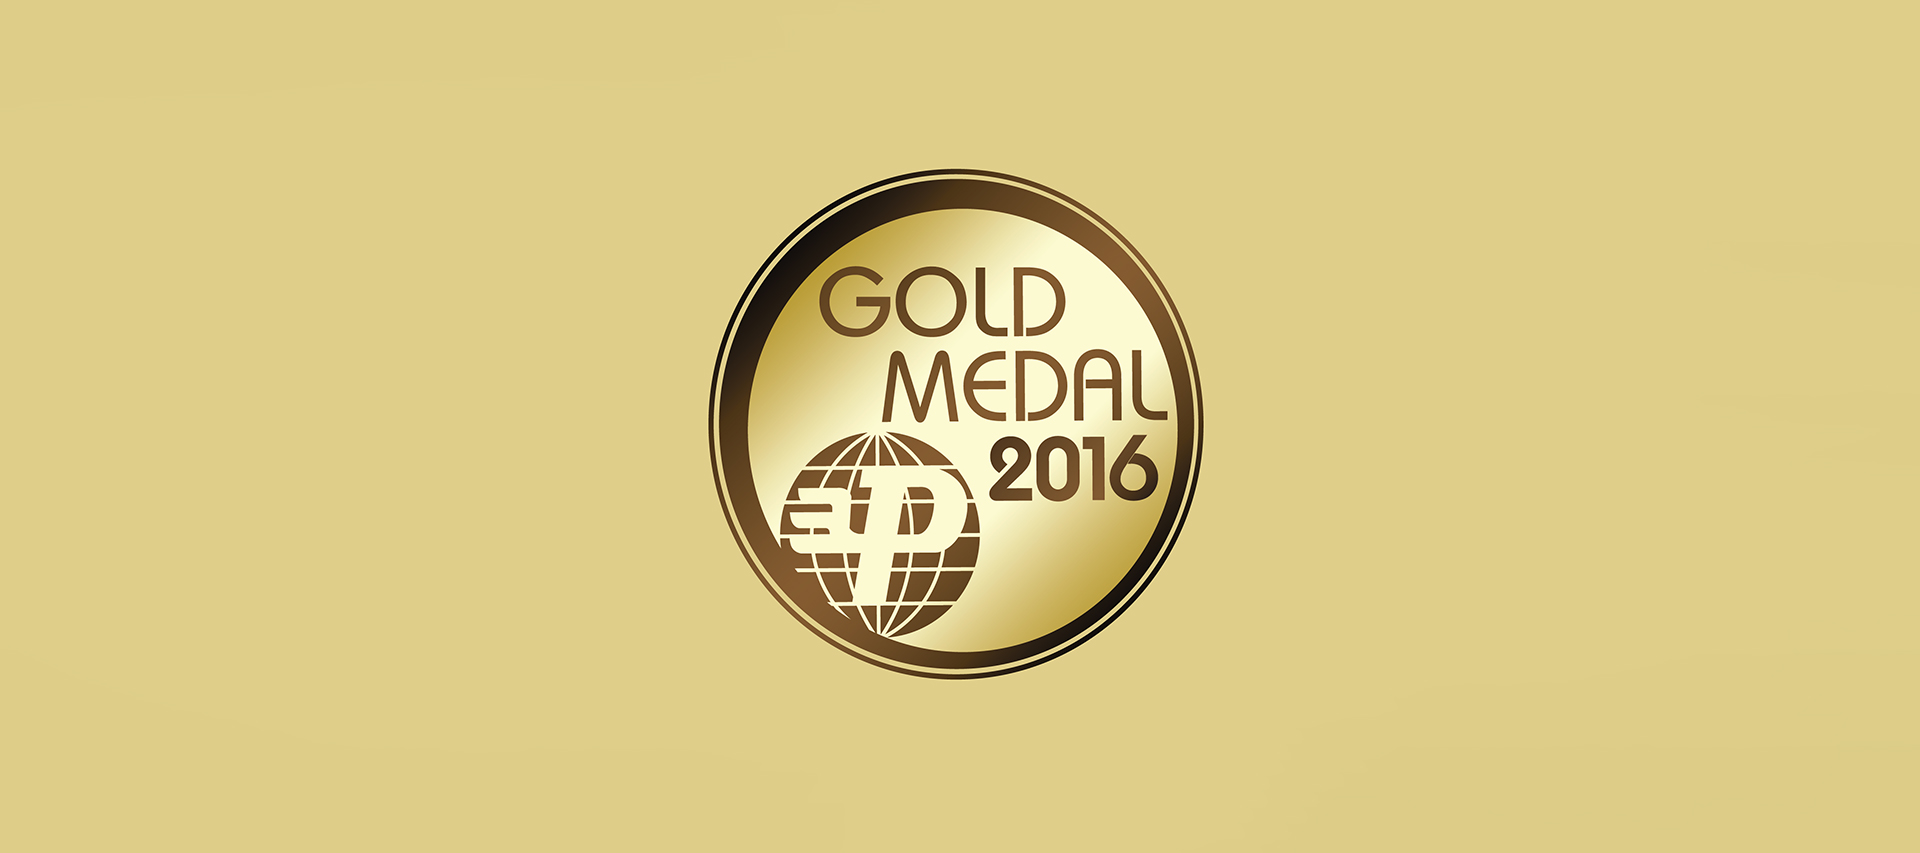 MTP Gold Medal 2016